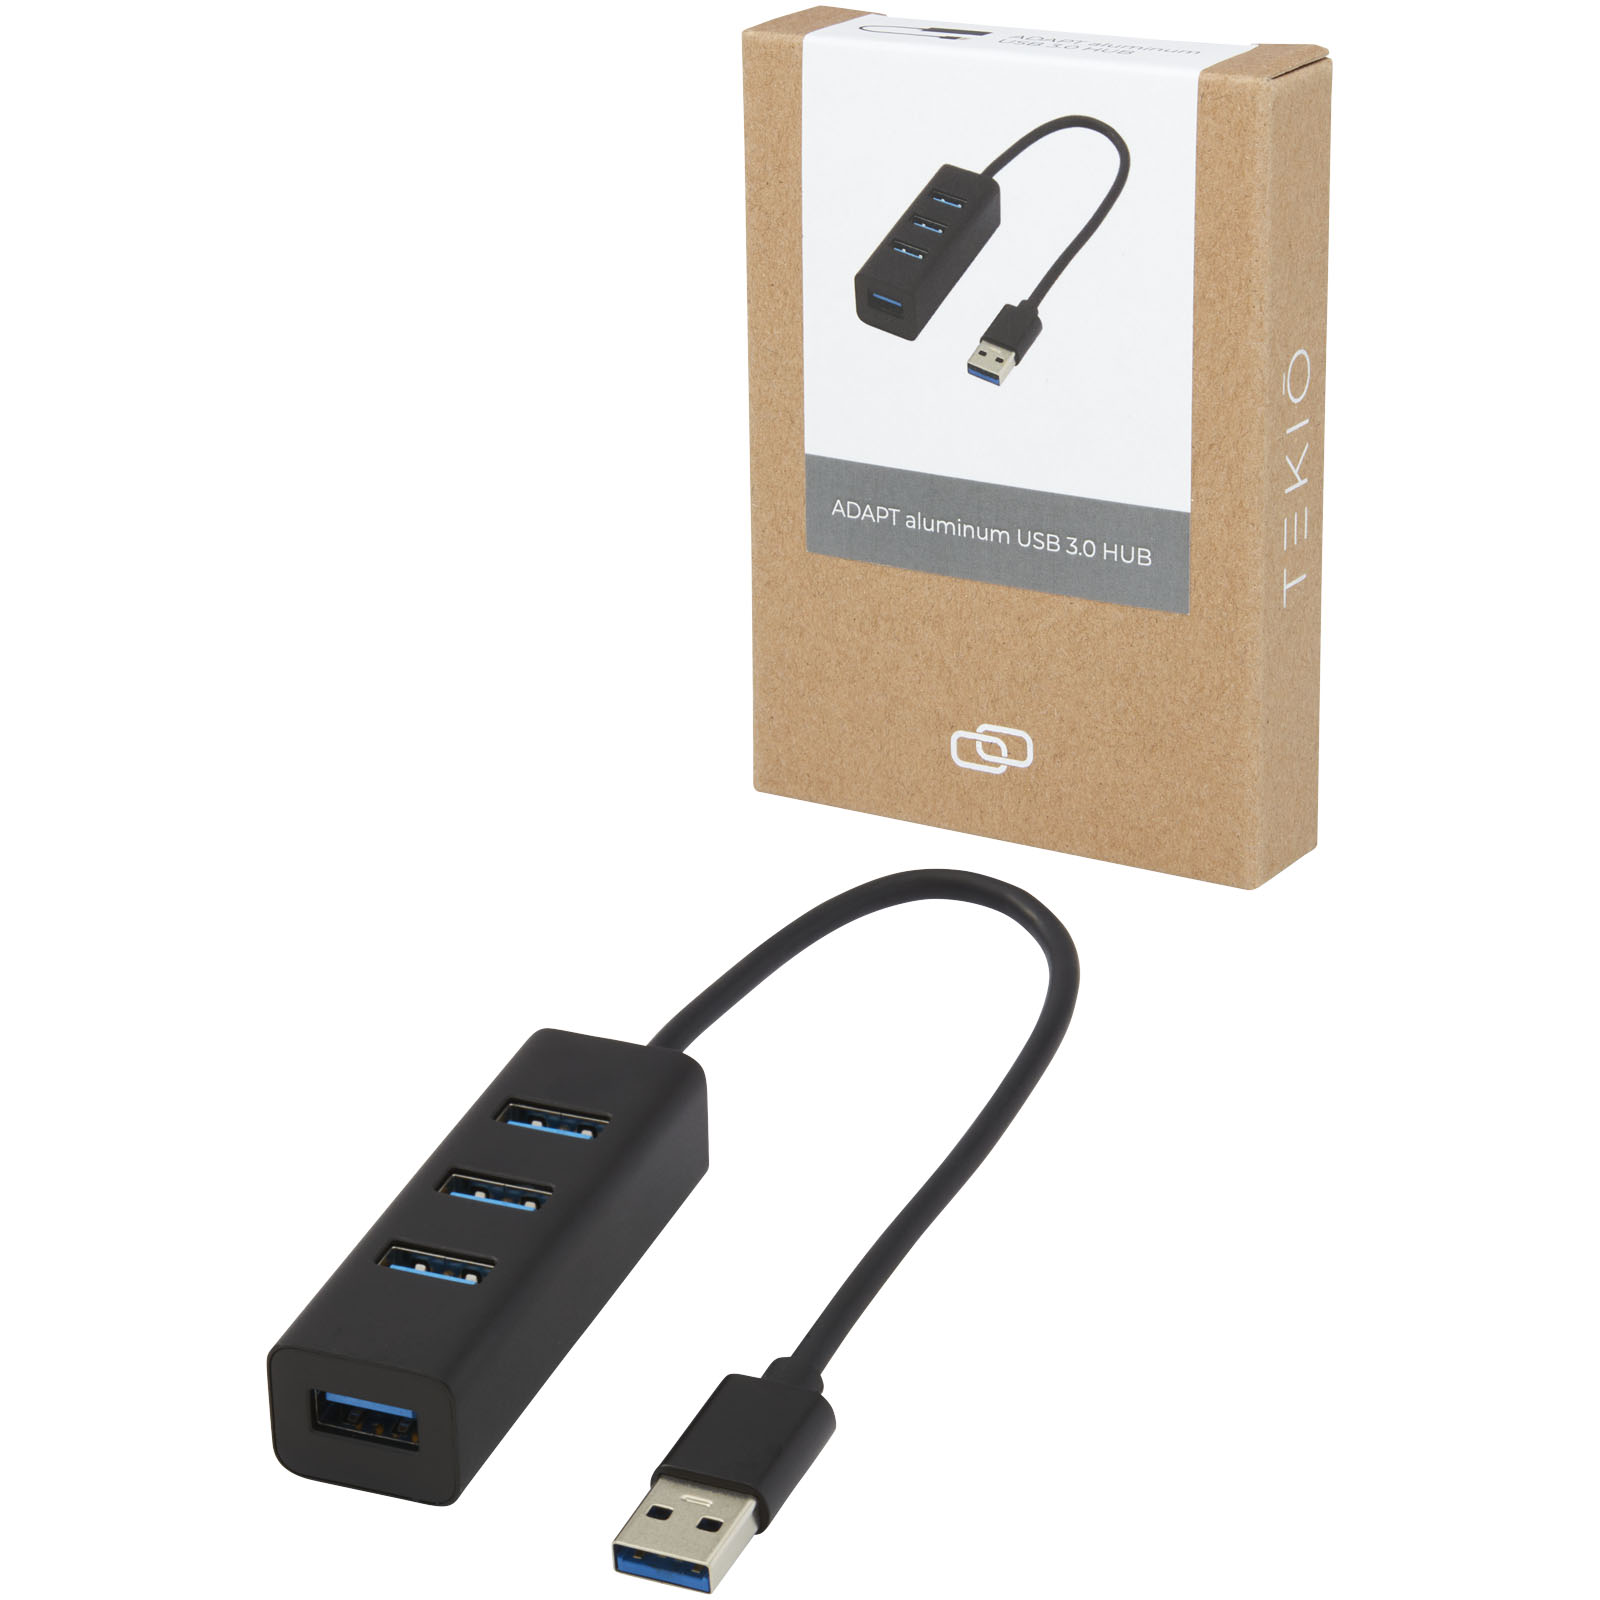 Hubs USB publicitaires - Hub USB 3.0 ADAPT en aluminium  - 5